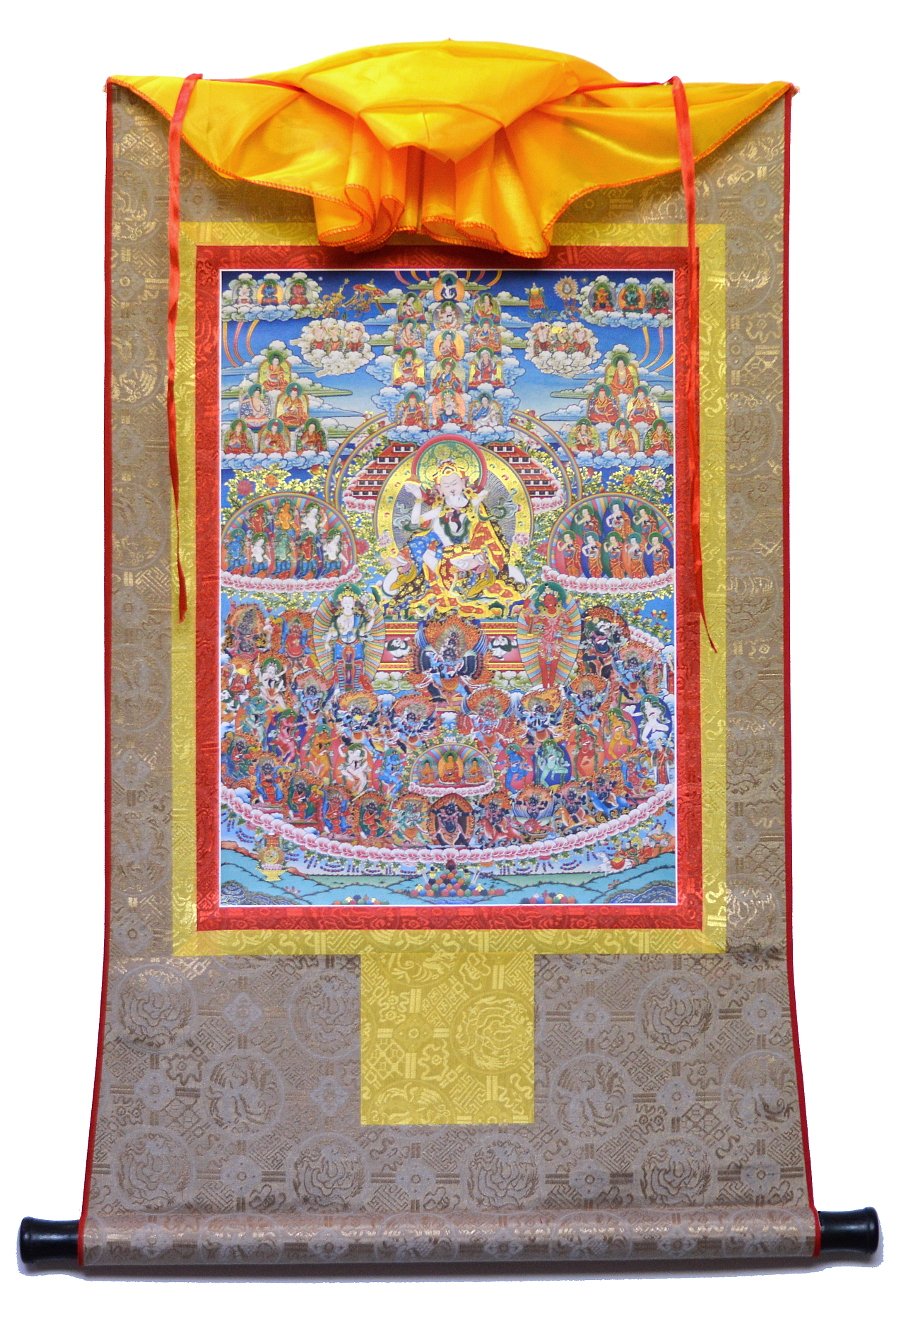 Тханка Древо прибежища традиции Лонгчен Ньингтиг (печатная), ~ 51 х 83 см, изображение: ~ 32 х 45 см